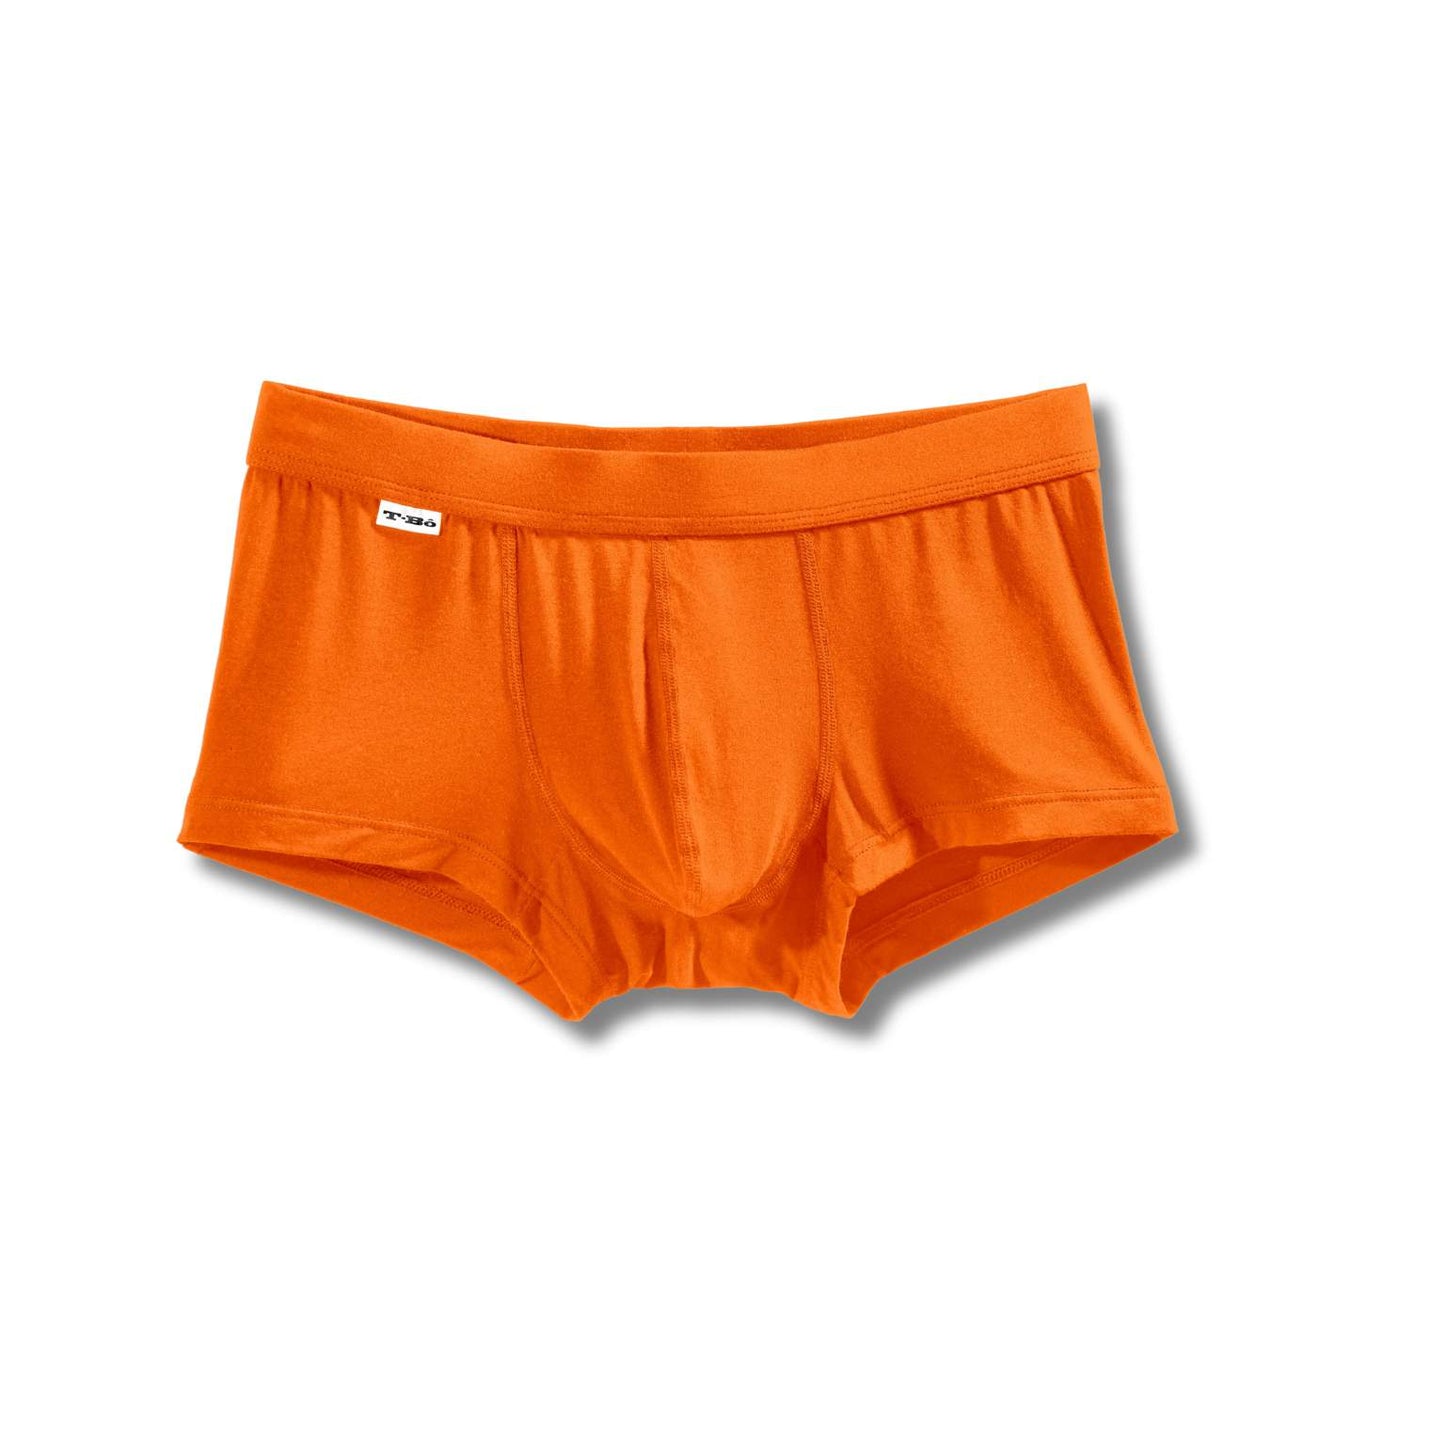 shop mens underwear online